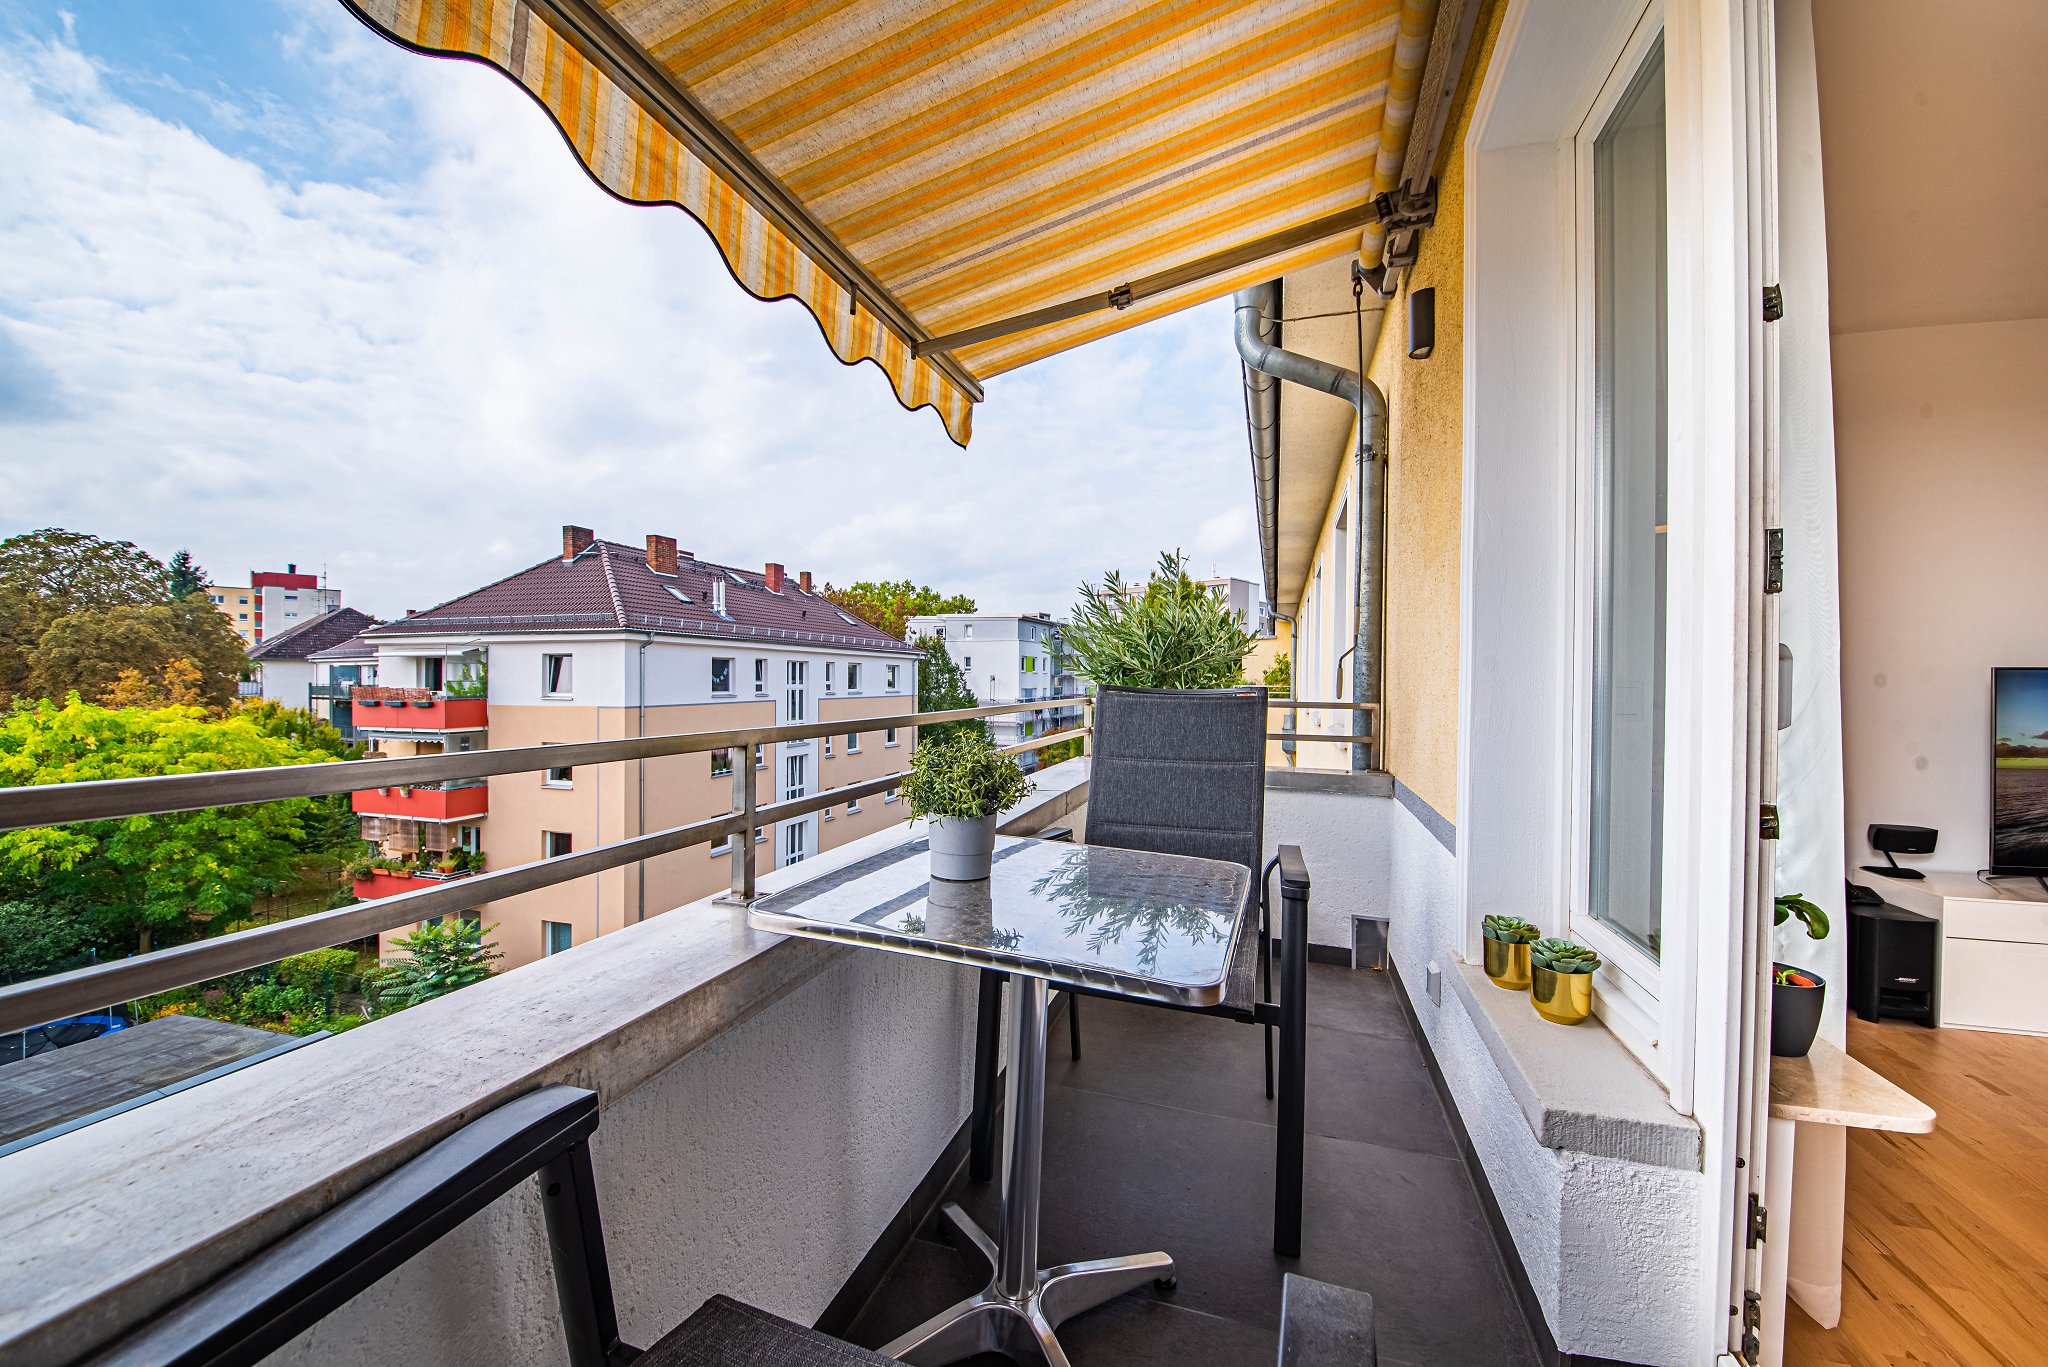 Dachgarten/2. Balkon